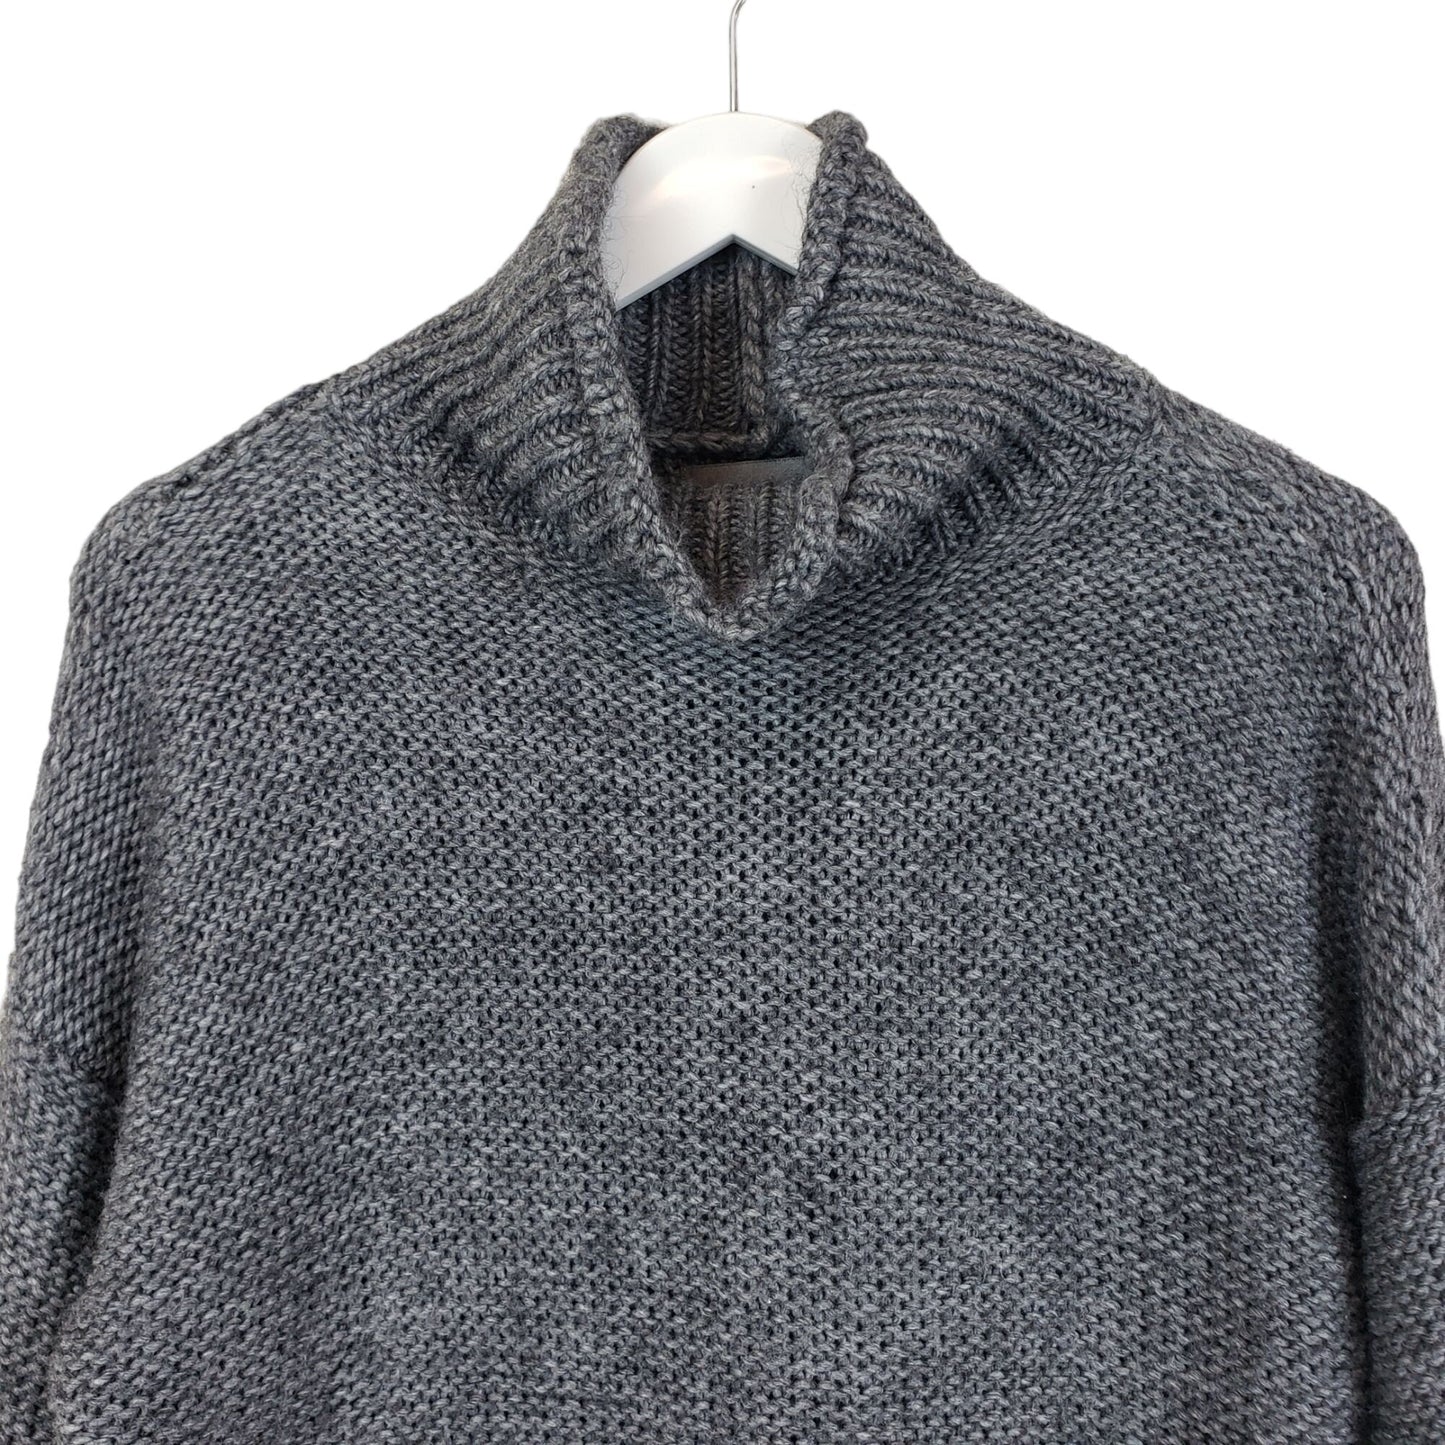 Anthropologie Lottie Wool Blend Cowlneck Sweater Size XS